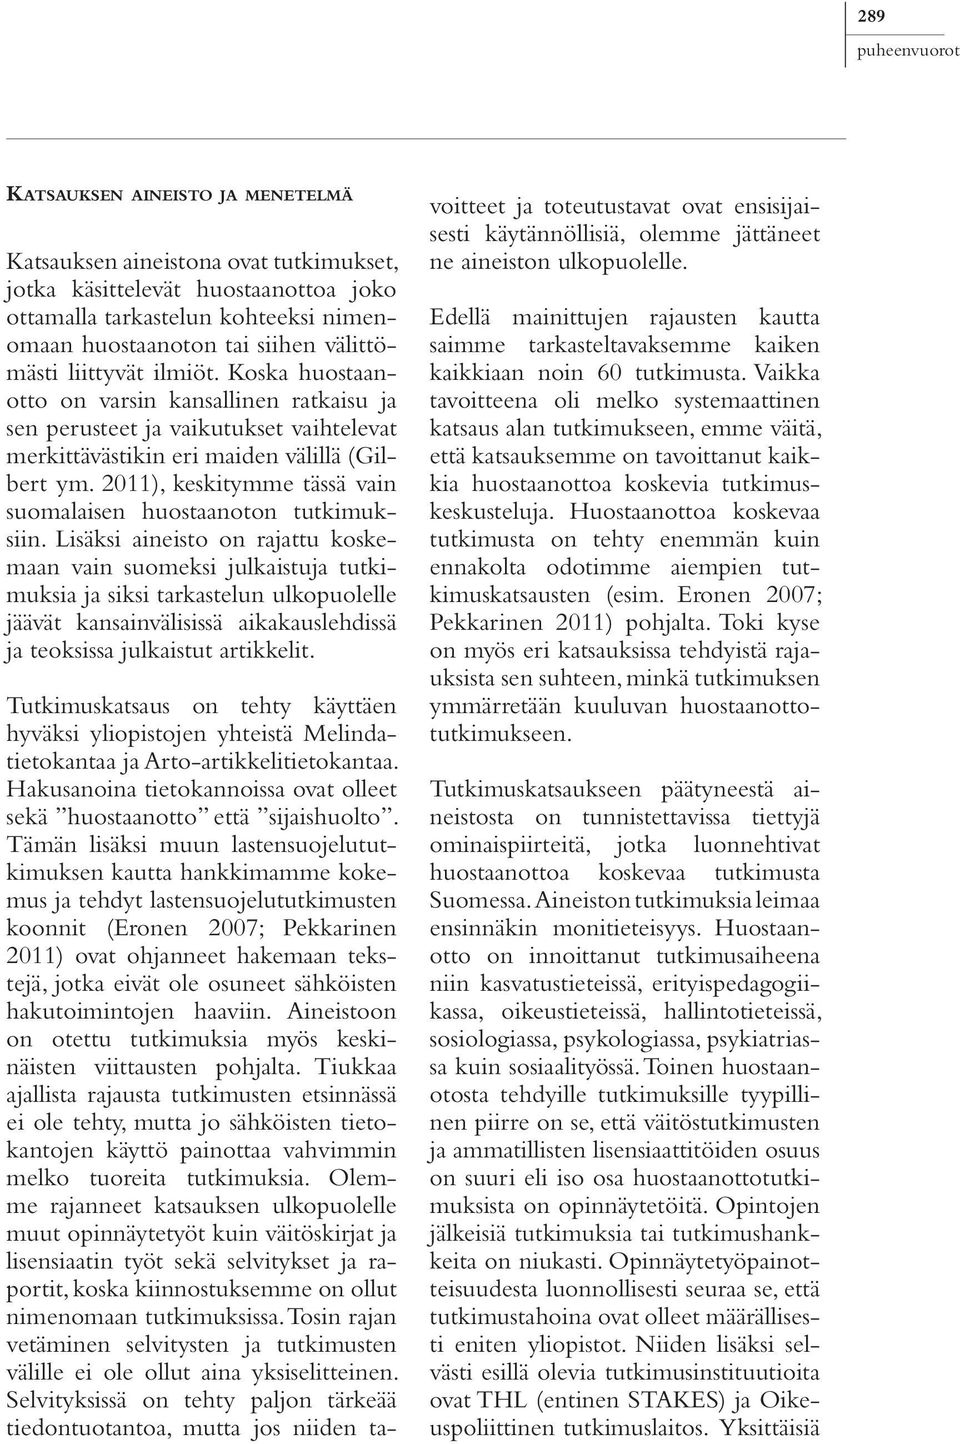 2011), keskitymme tässä vain suomalaisen huostaanoton tutkimuksiin.